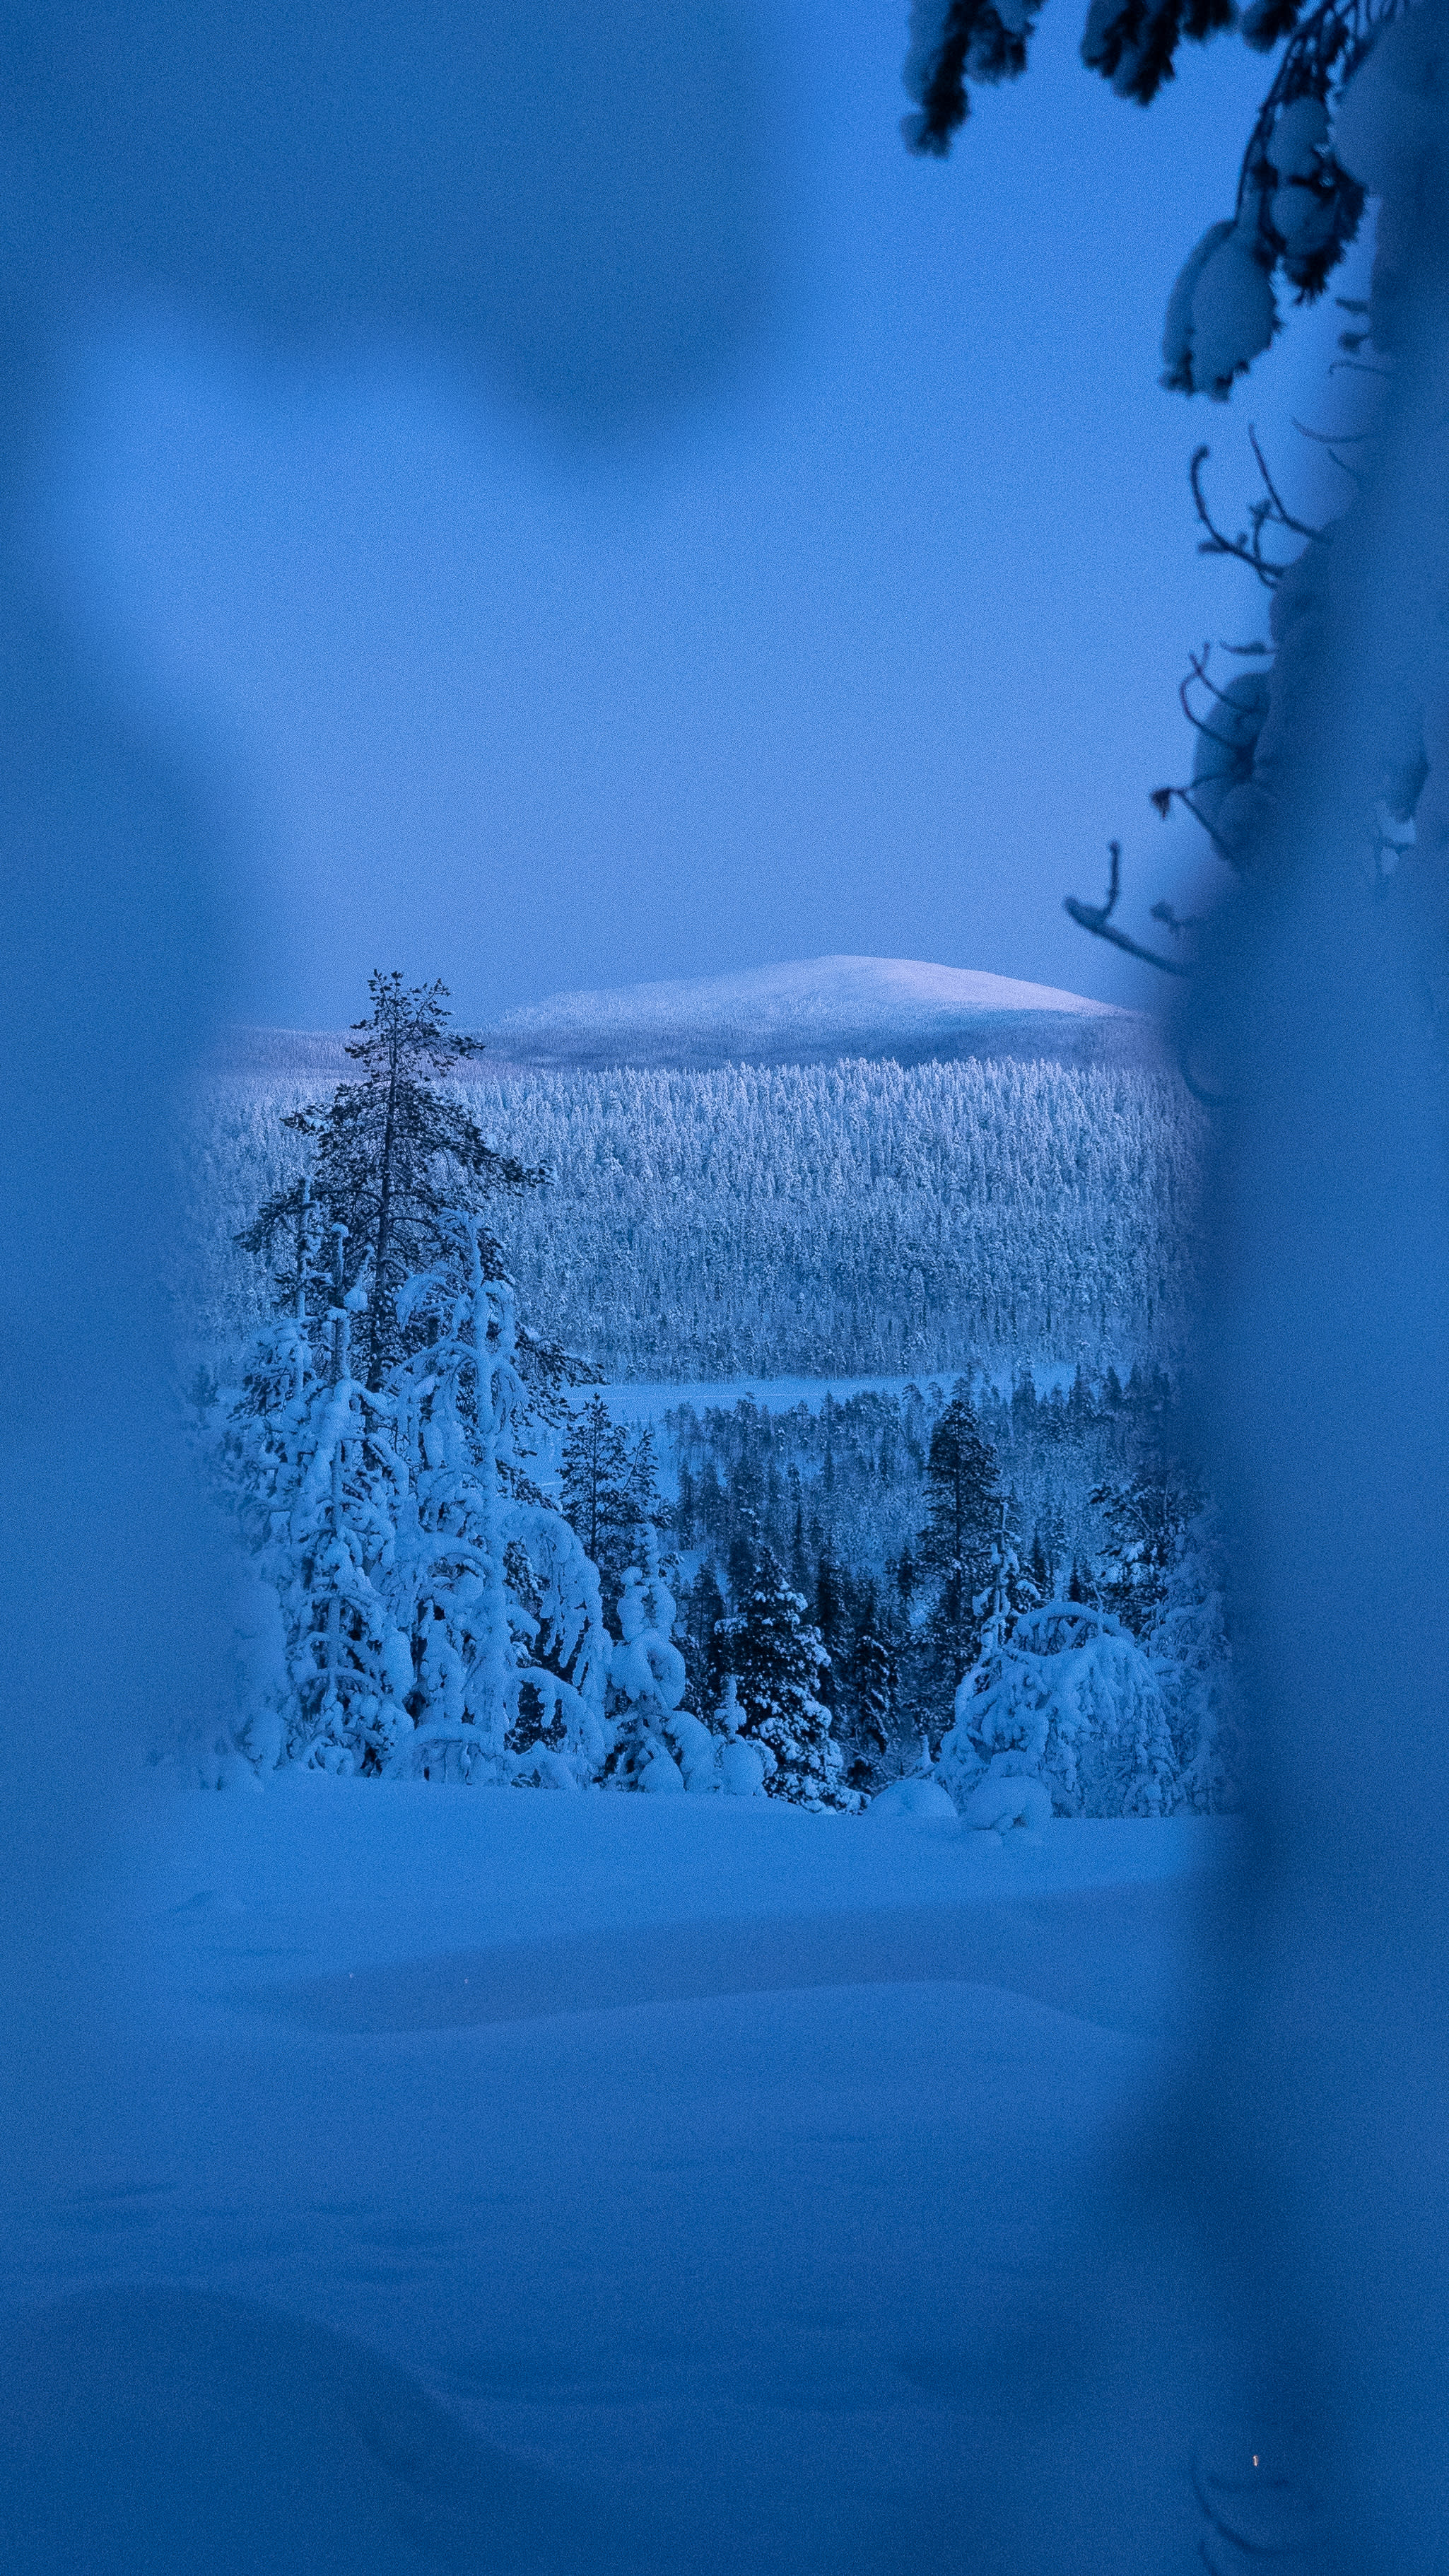 Hello kegelapan: Lapland Finland akan menetap tanpa cahaya matahari selama berminggu-minggu